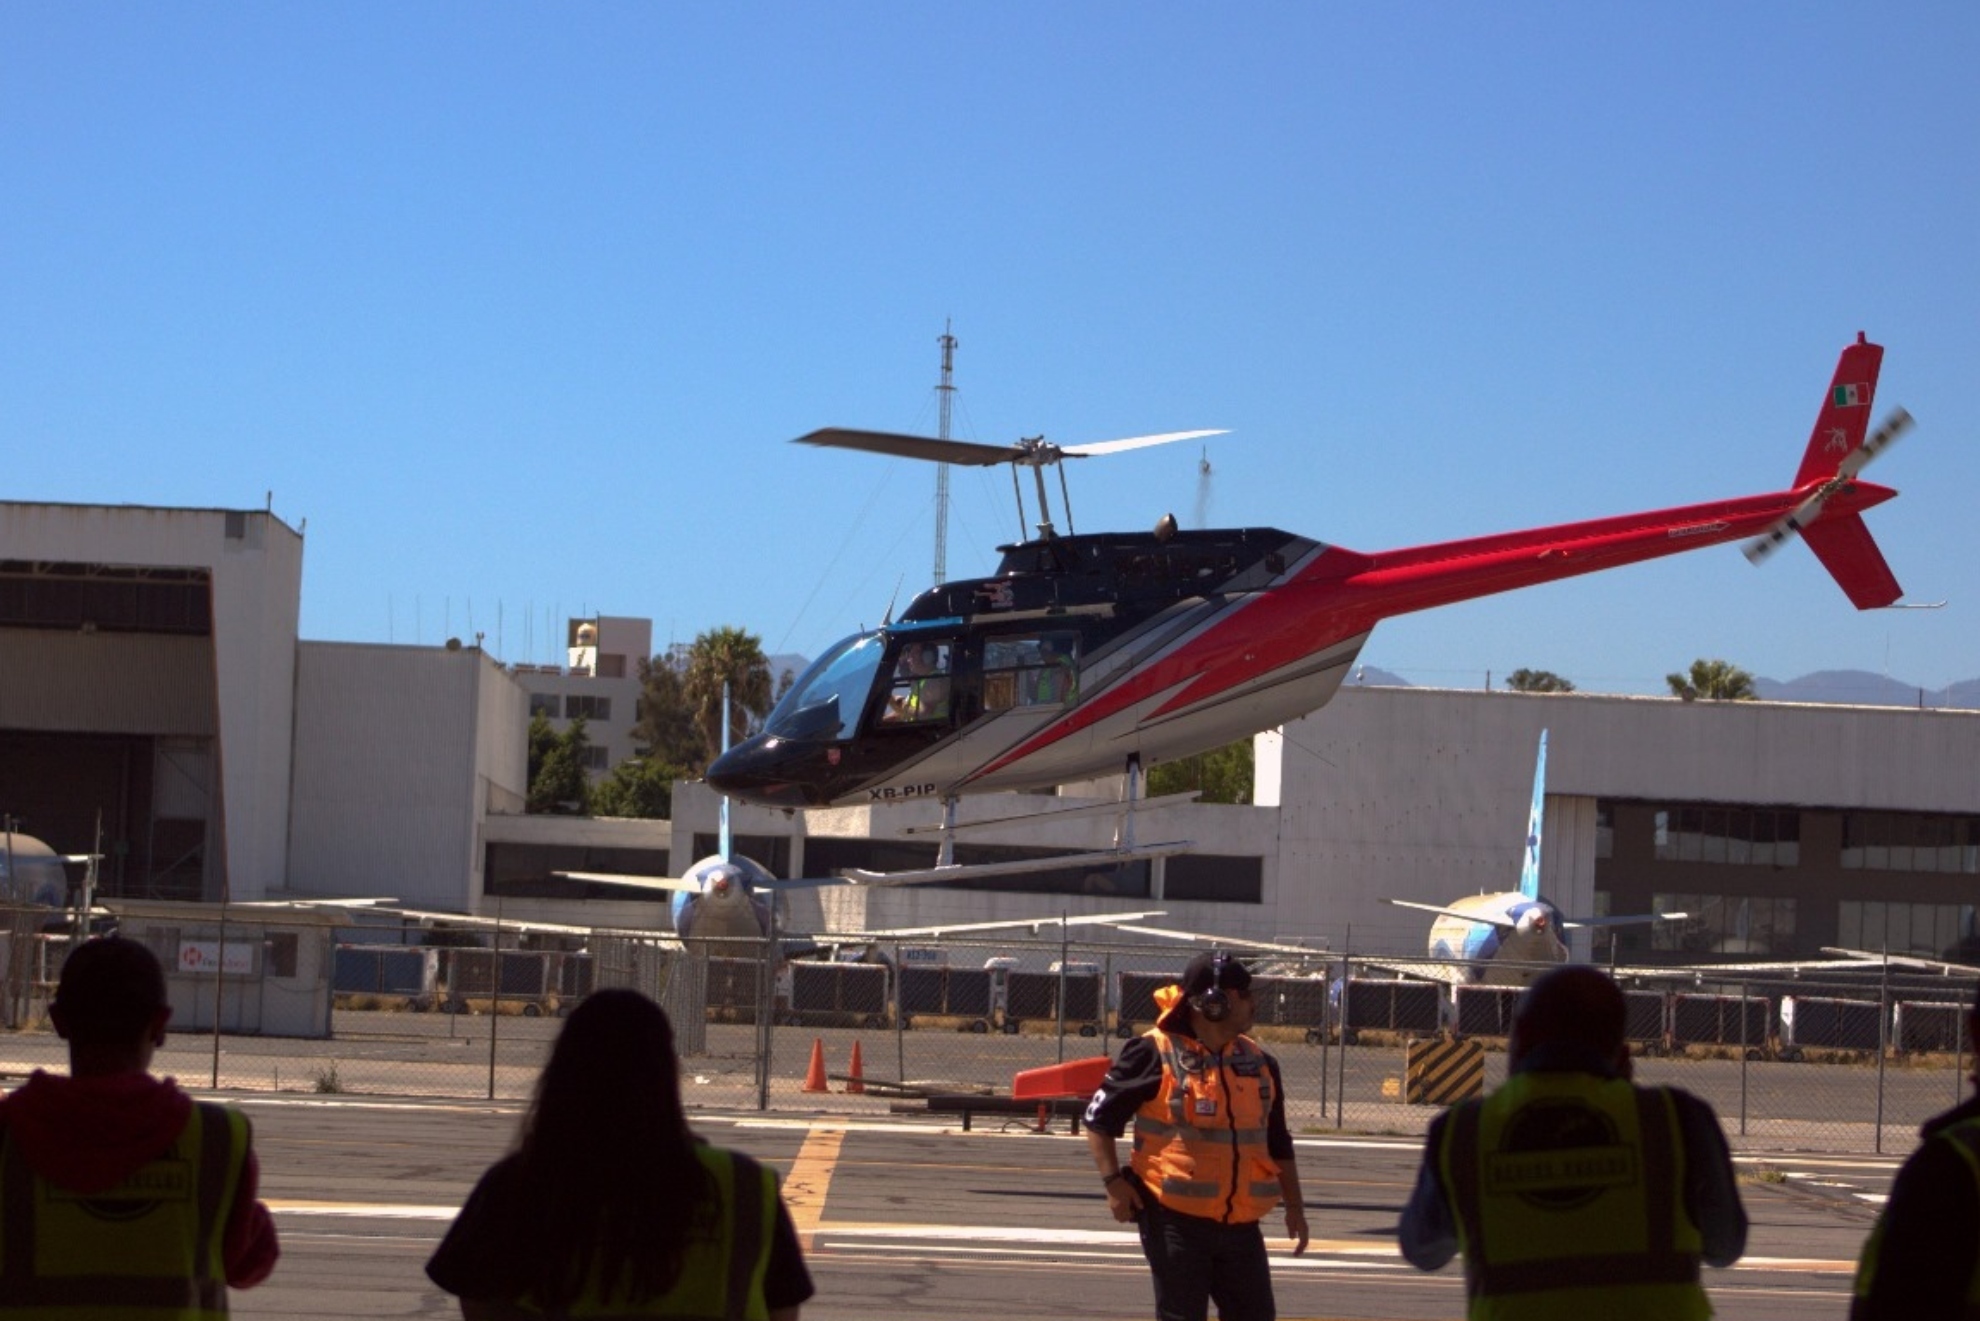 Accidente helicptero CDMX: Cunto costaba el paquete llvame al cielo de la tragedia?